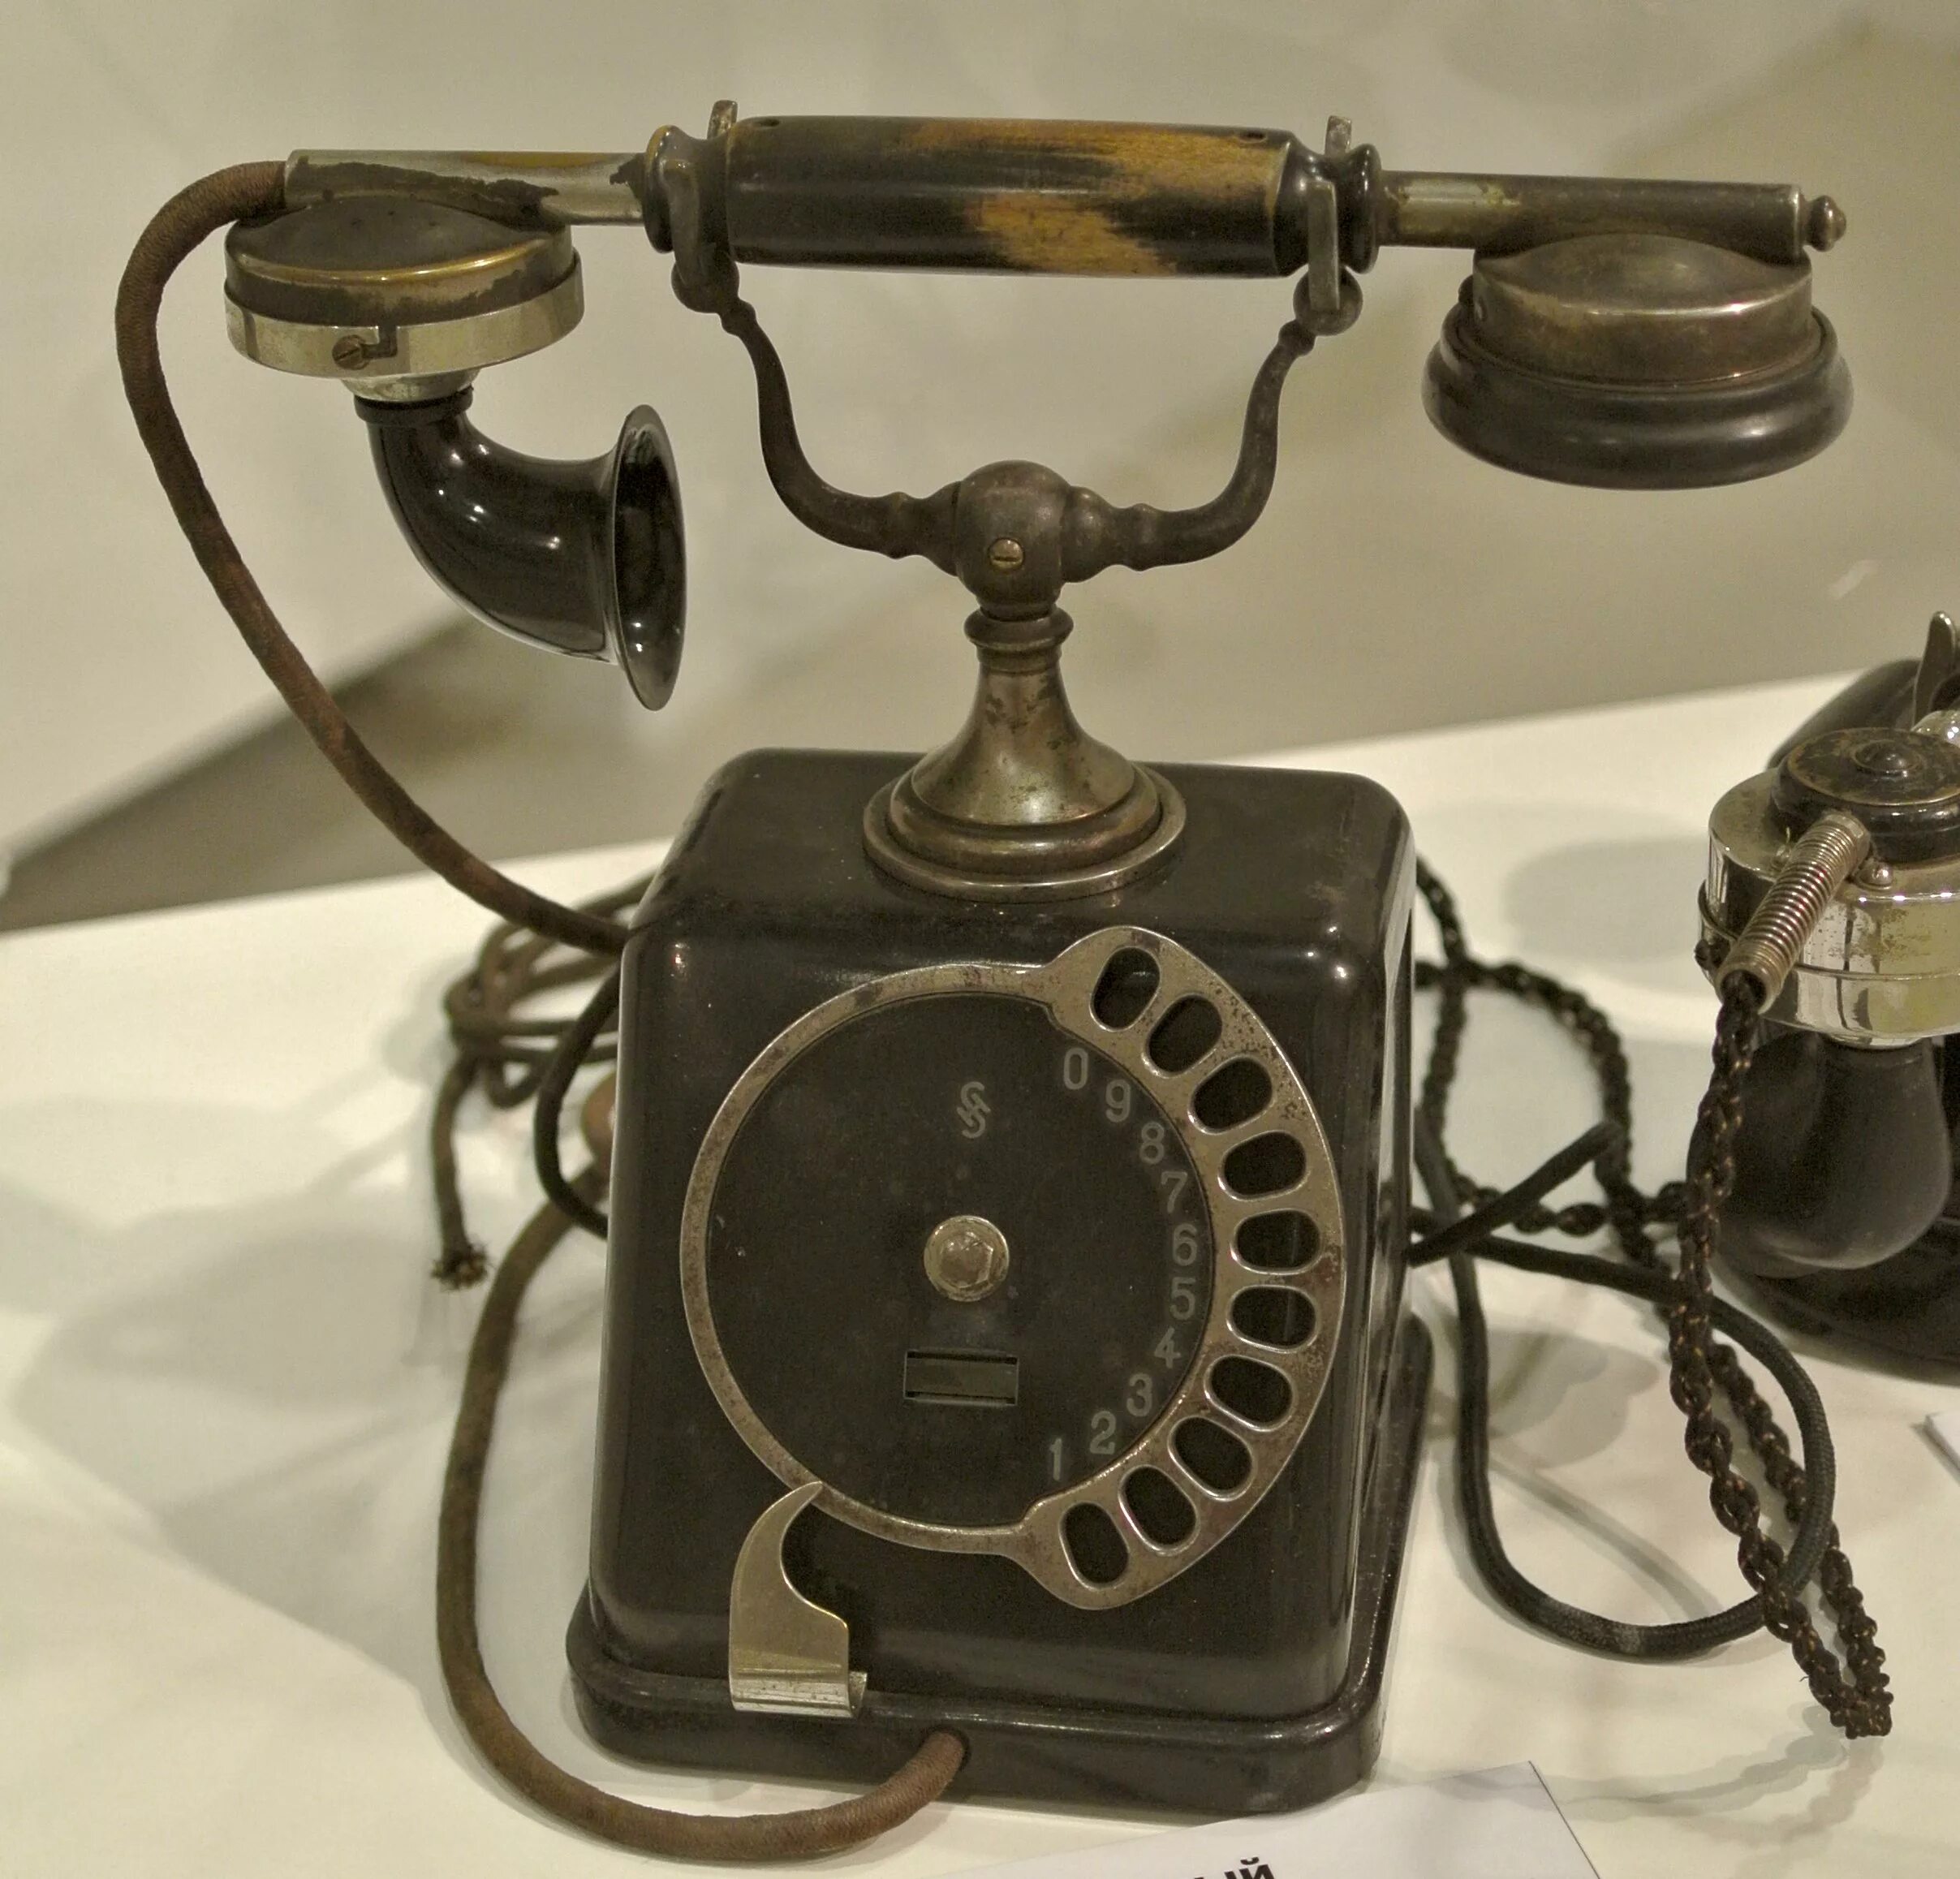 ЭЛМОН Браун Строуджер. Siemens & Halske ZBSA 19. Телефонный аппарат Бойля 1896. Телефонный аппарат Эриксон 1910 года. Старый заводской телефон